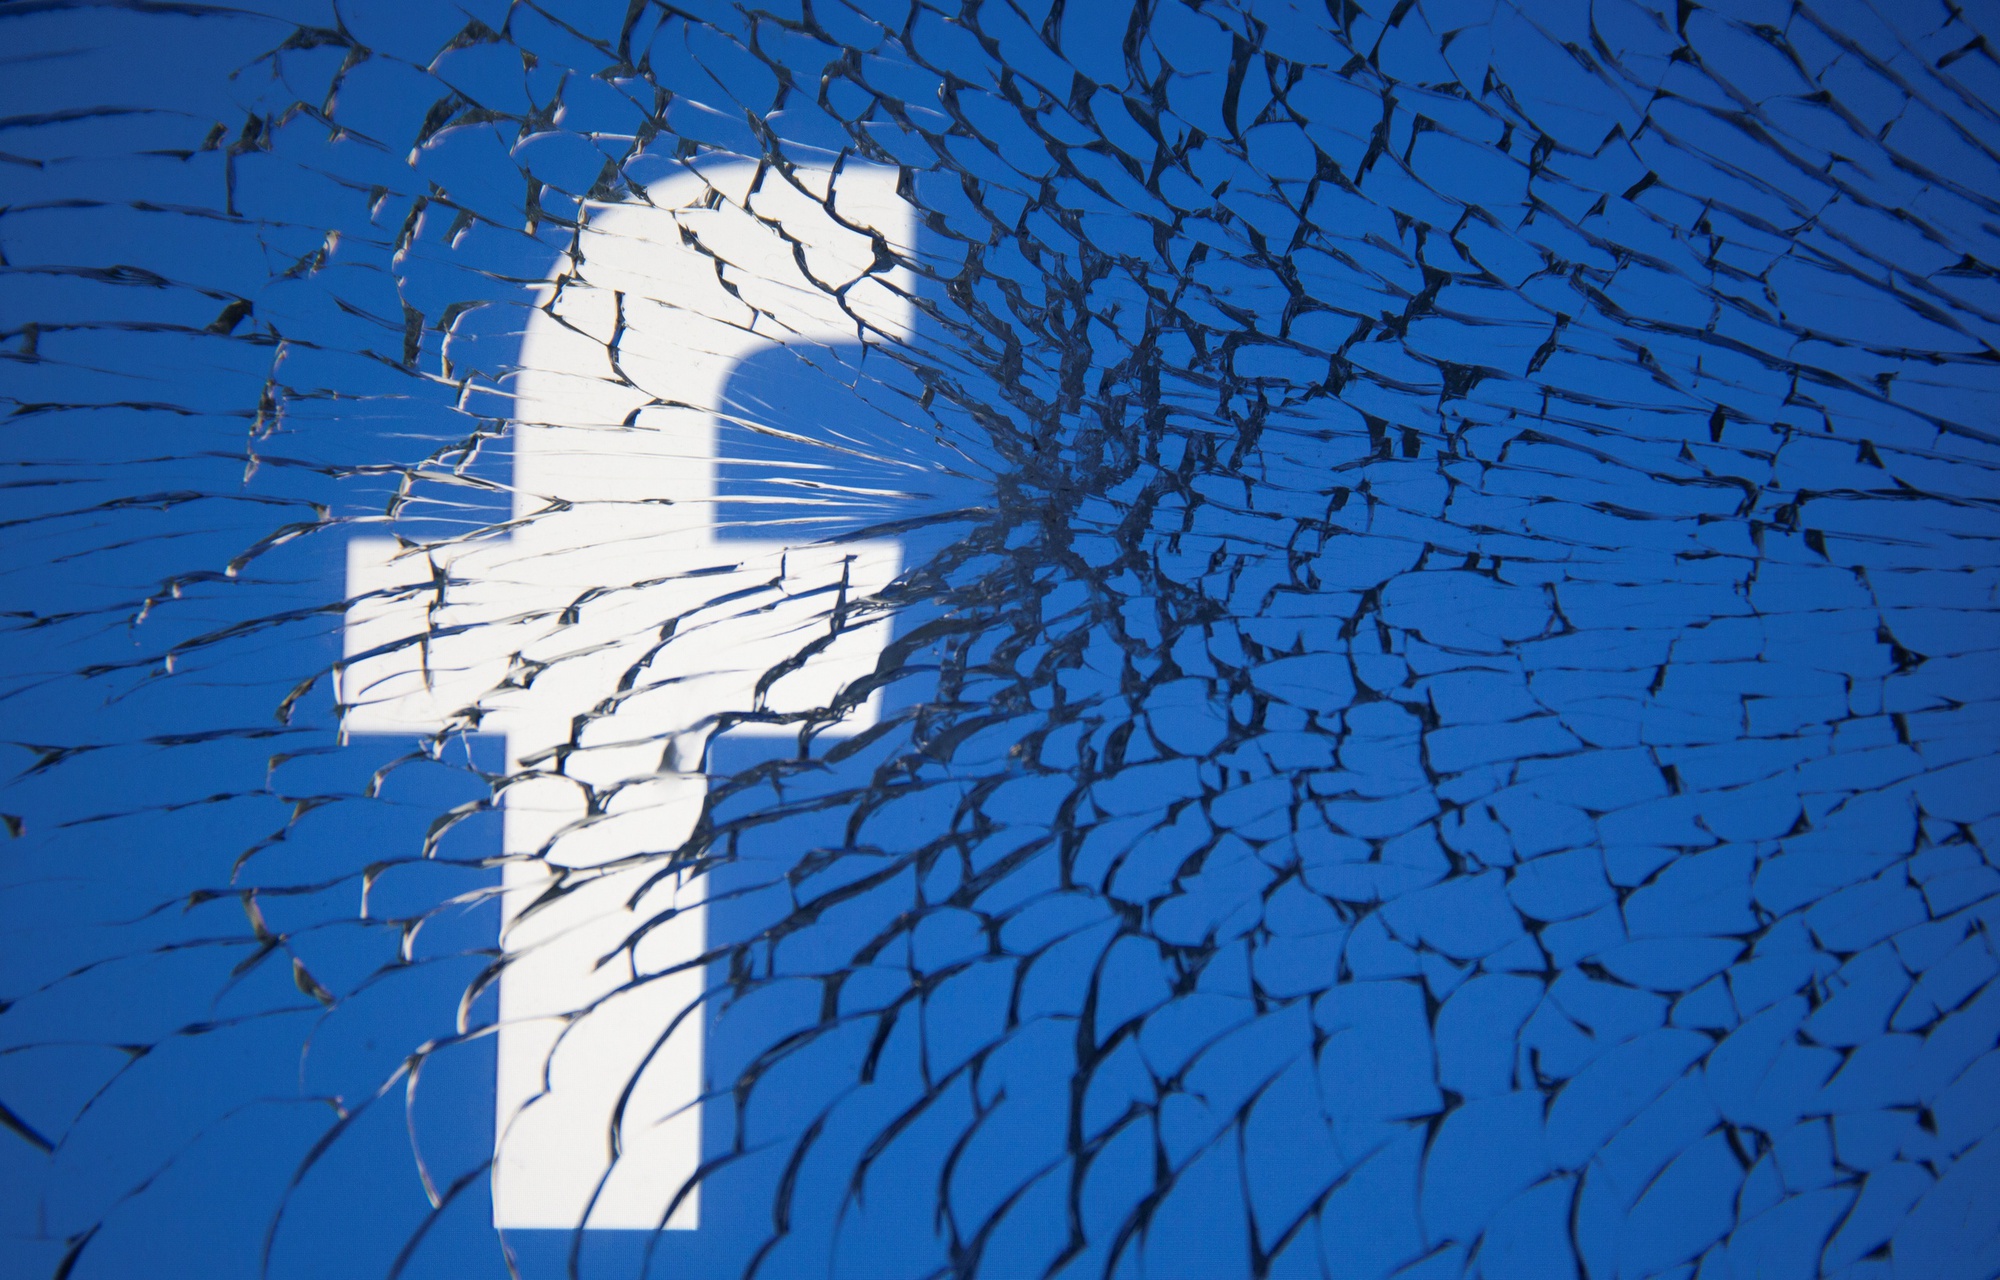 Facebook, Instagram sập: Thiệt hại khủng khiếp cho kinh tế toàn cầu, đã đến lúc dừng phụ thuộc nền tảng này- Ảnh 2.